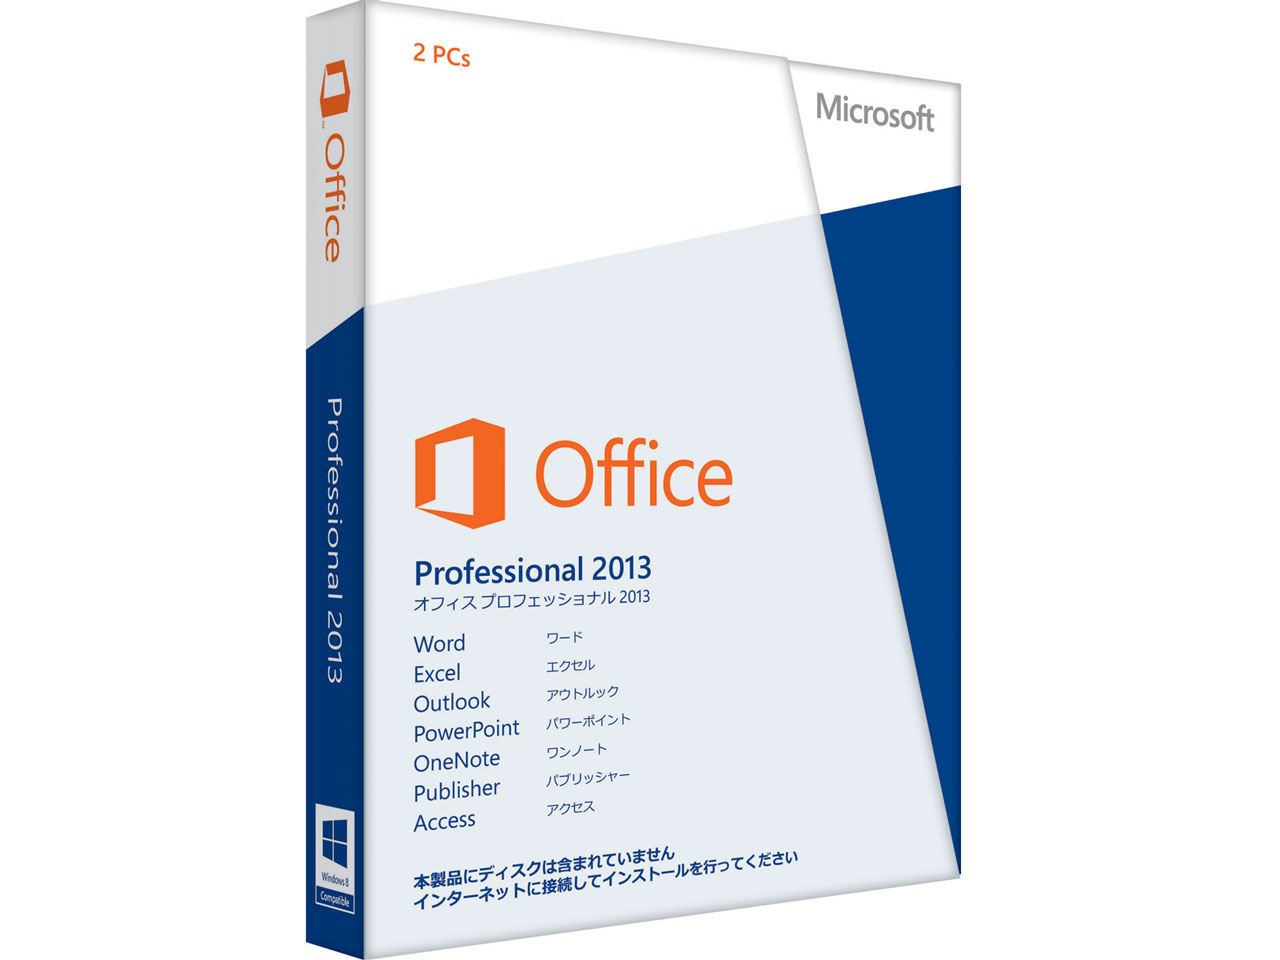 価格.com - Office Professional 2013 の製品画像